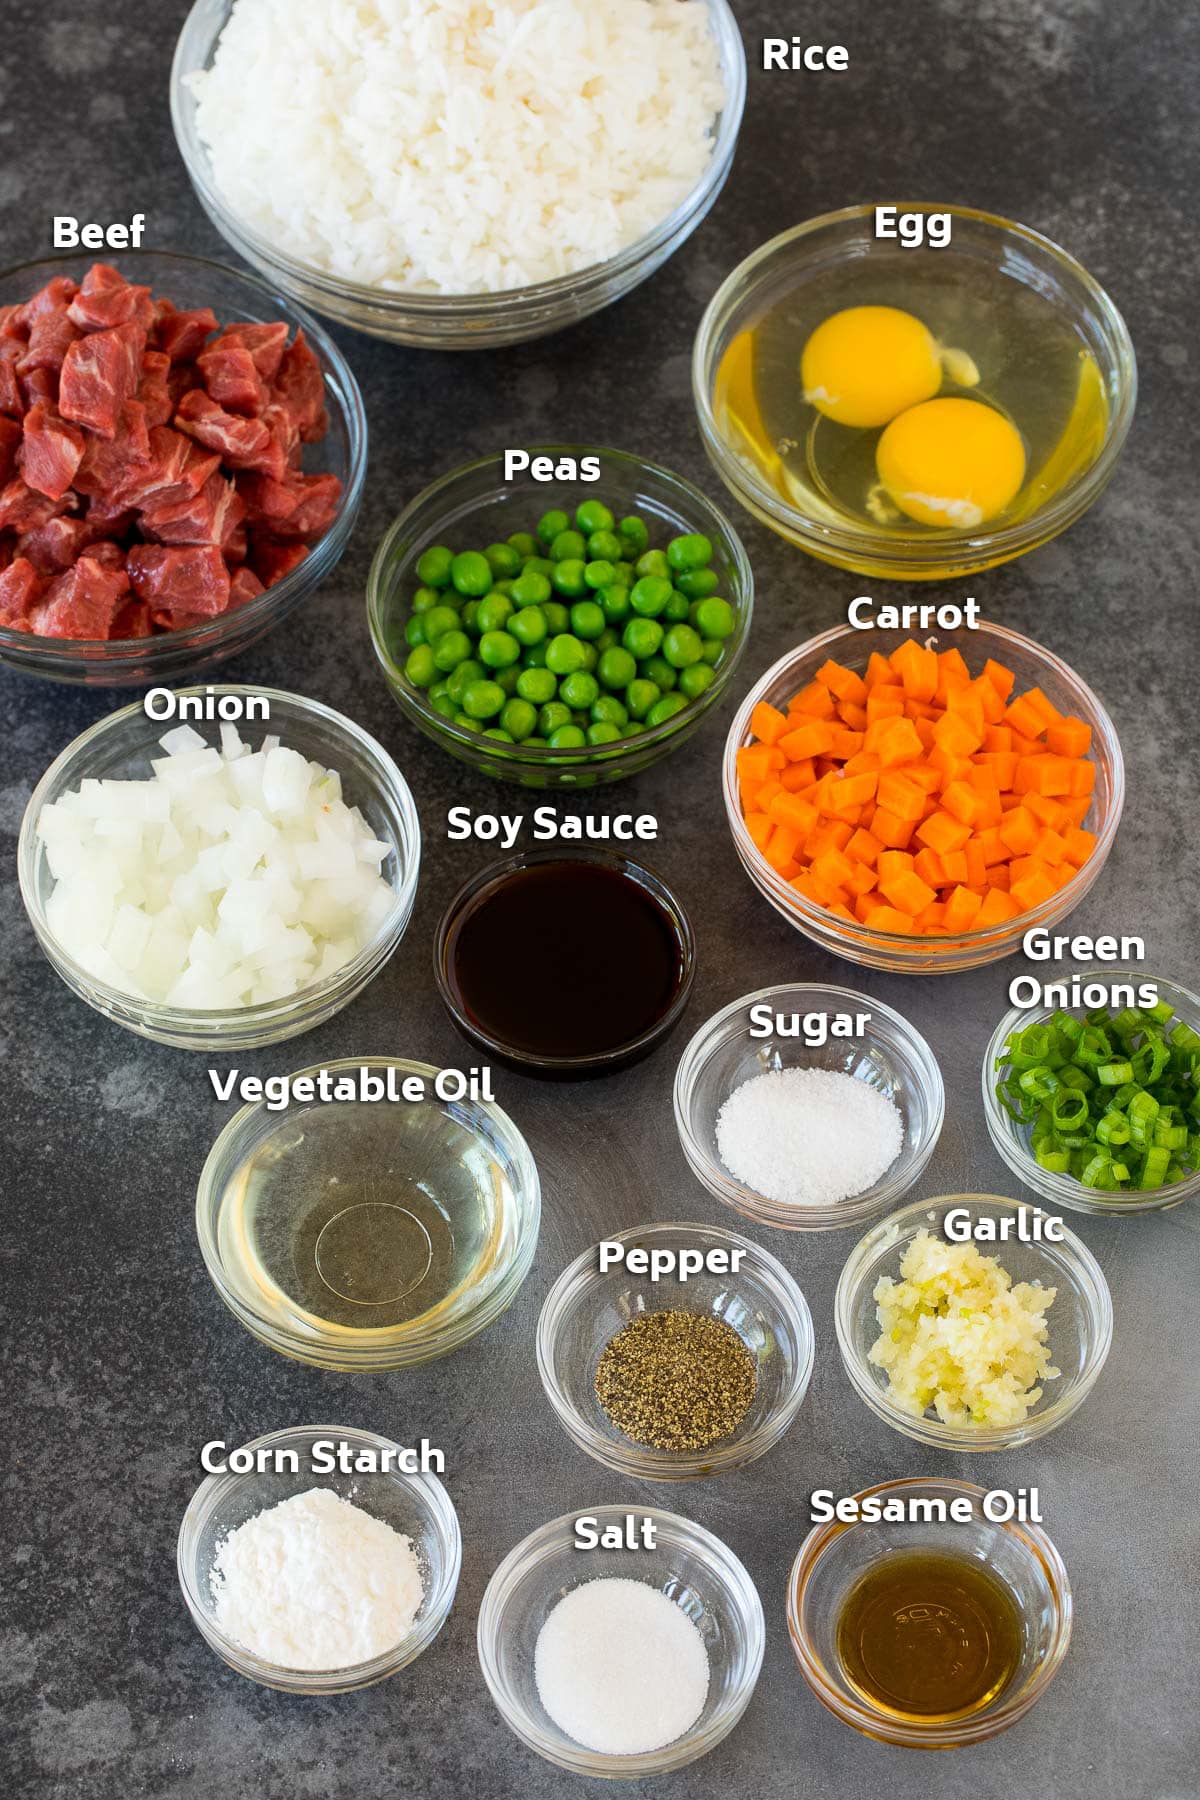 Bowls of ingredients including steak, rice, vegetables and seasonings.